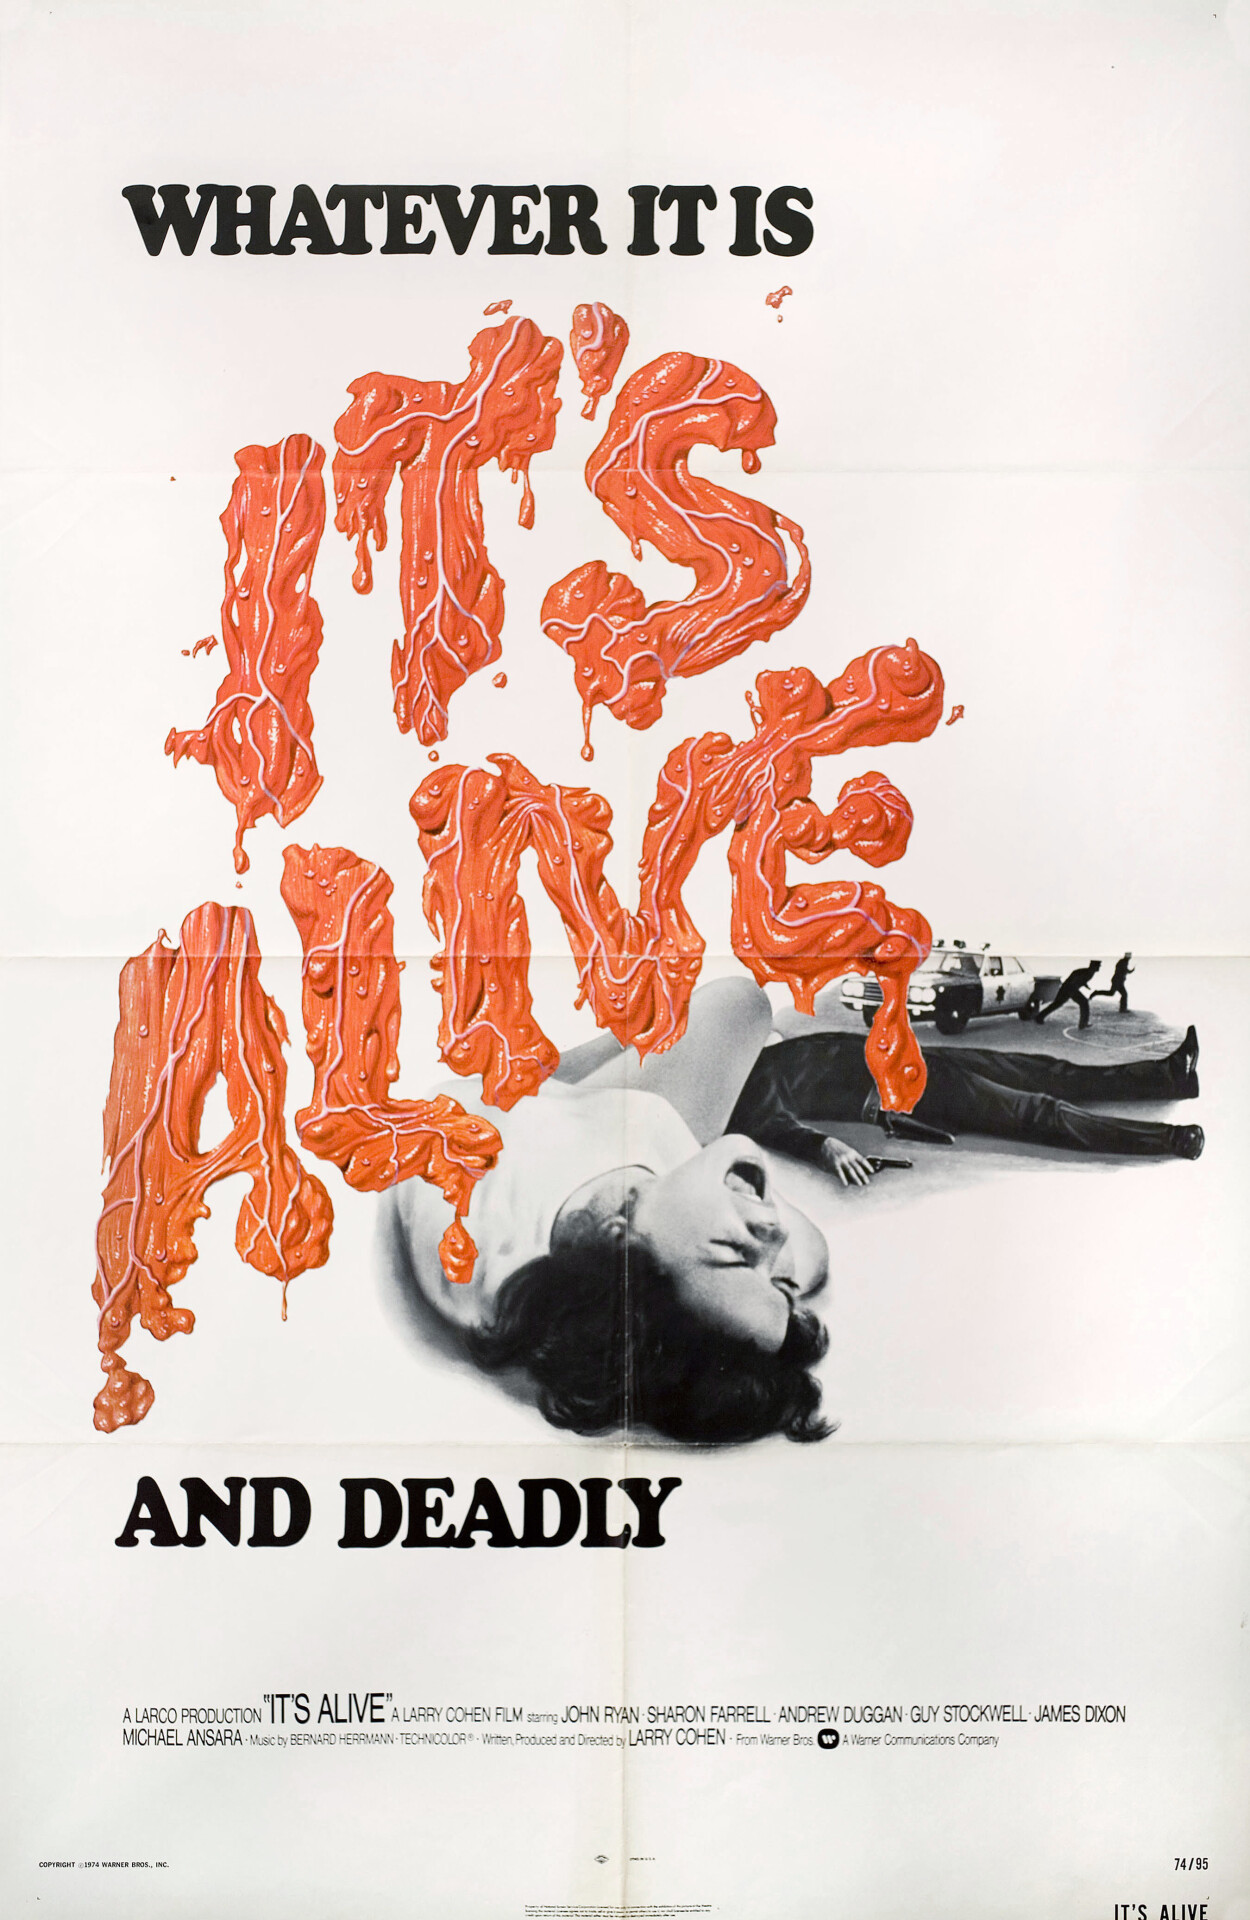 Оно живо (Its Alive, 1974), режиссёр Ларри Коэн, американский постер к фильму (ужасы, 1974 год)